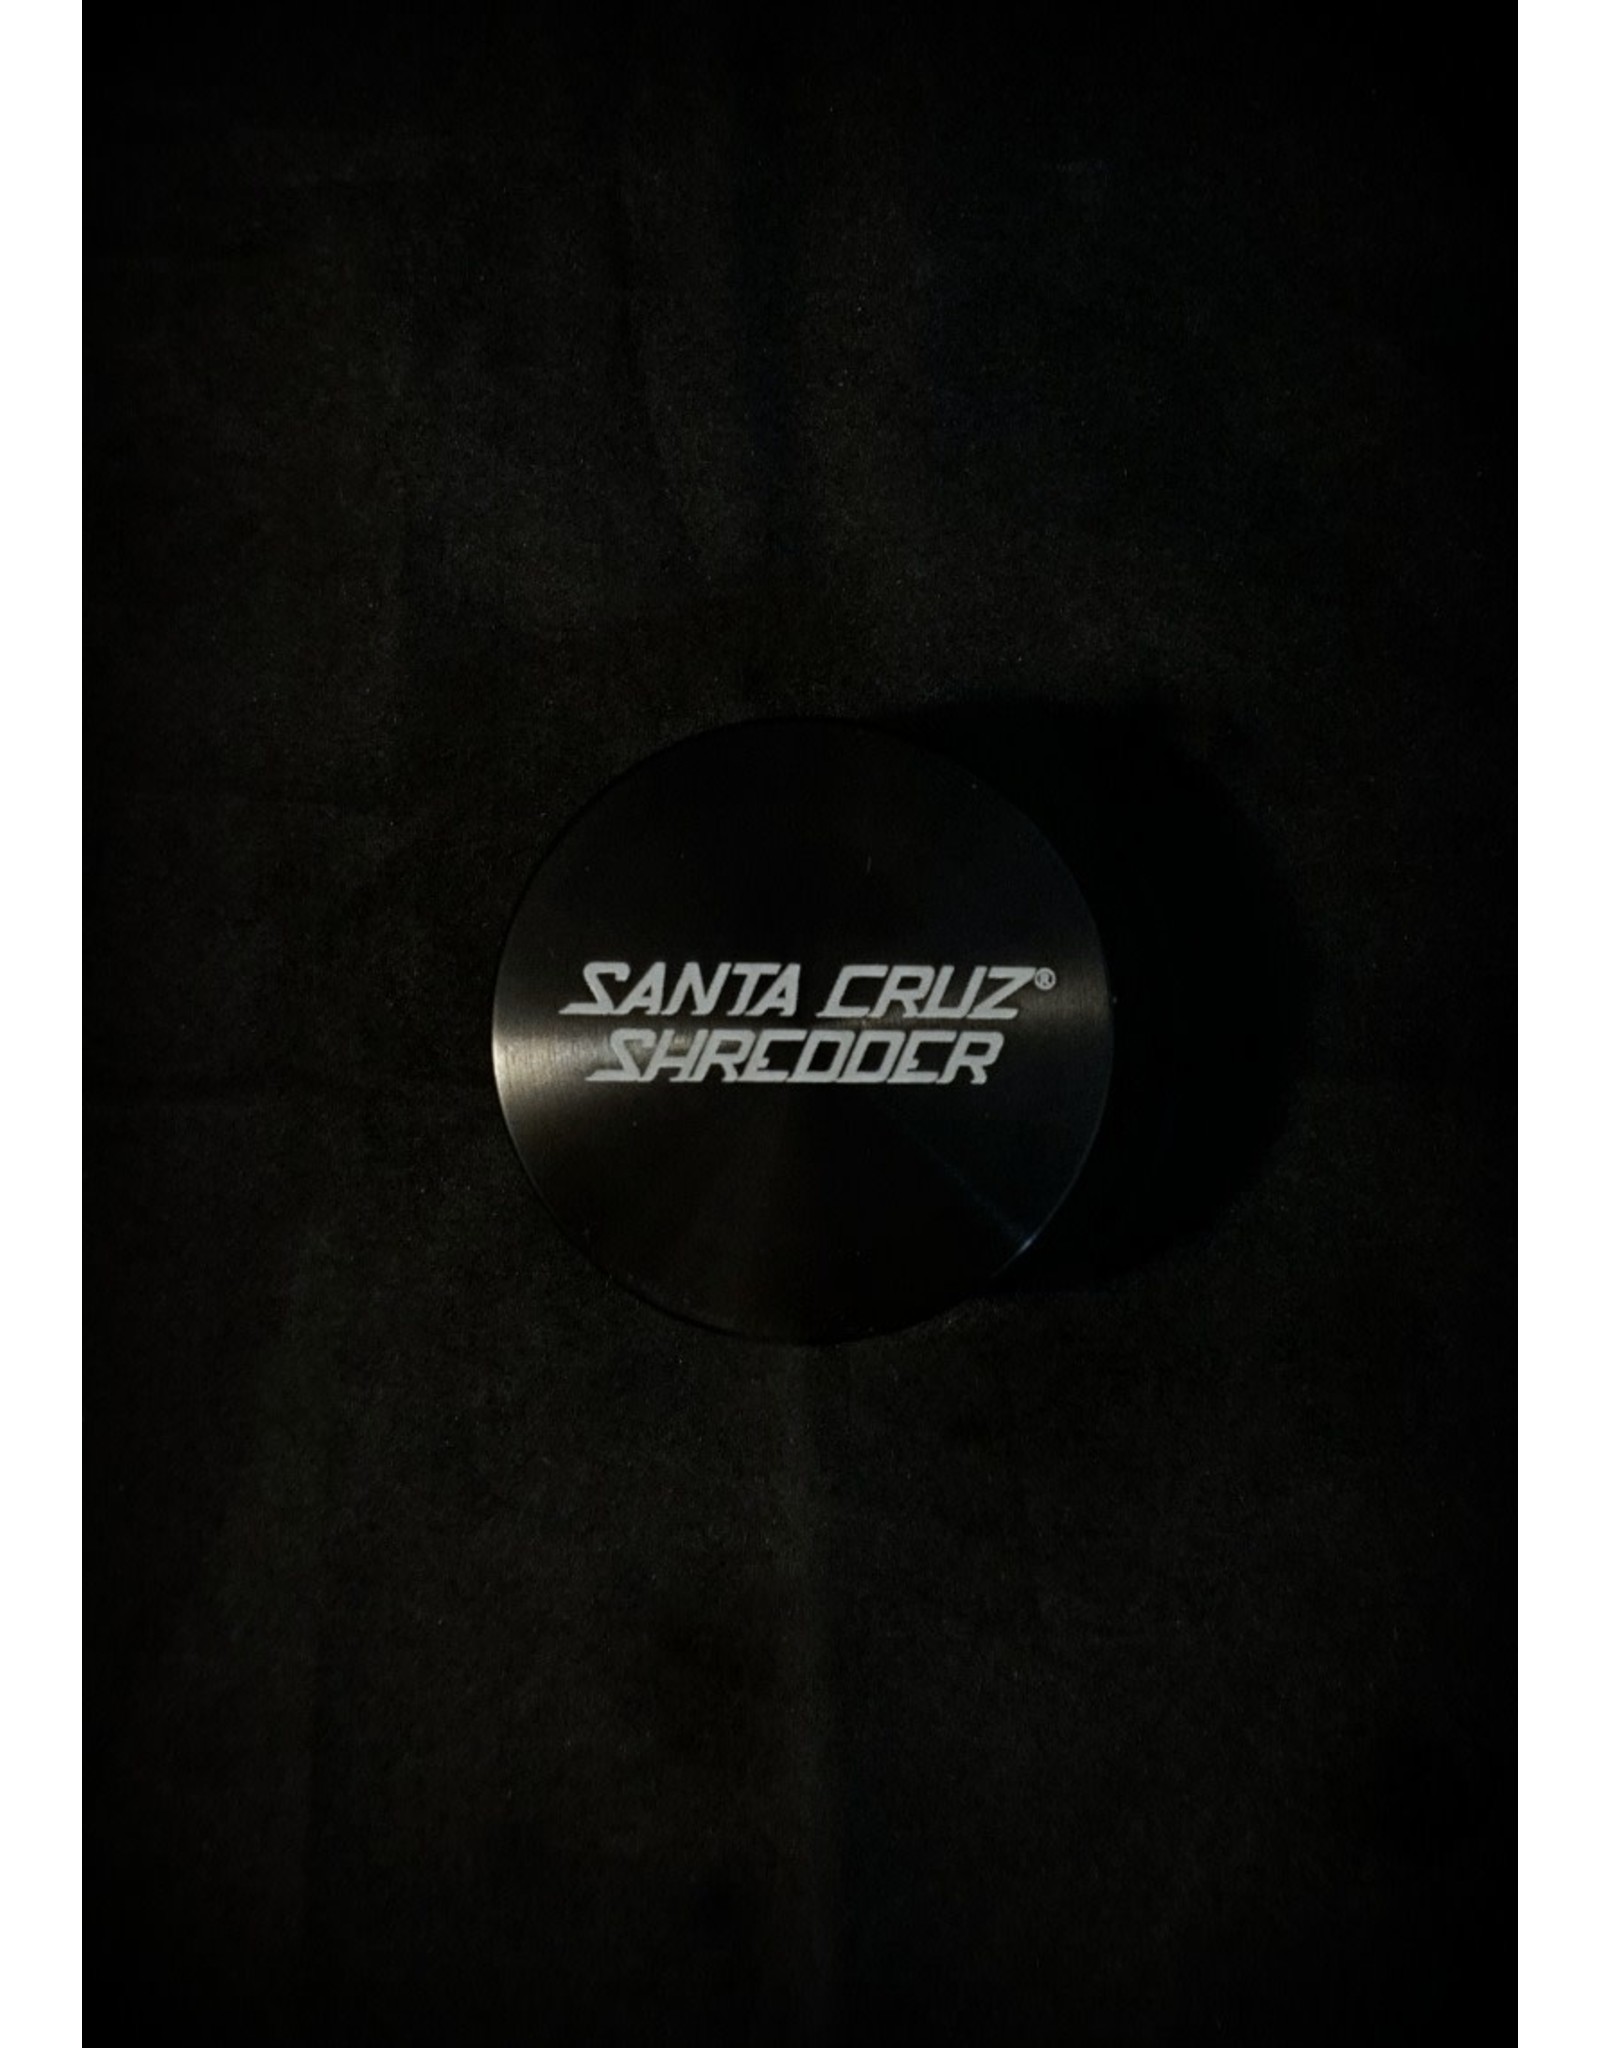 Santa Cruz Santa Cruz Shredder 2pc Medium Black